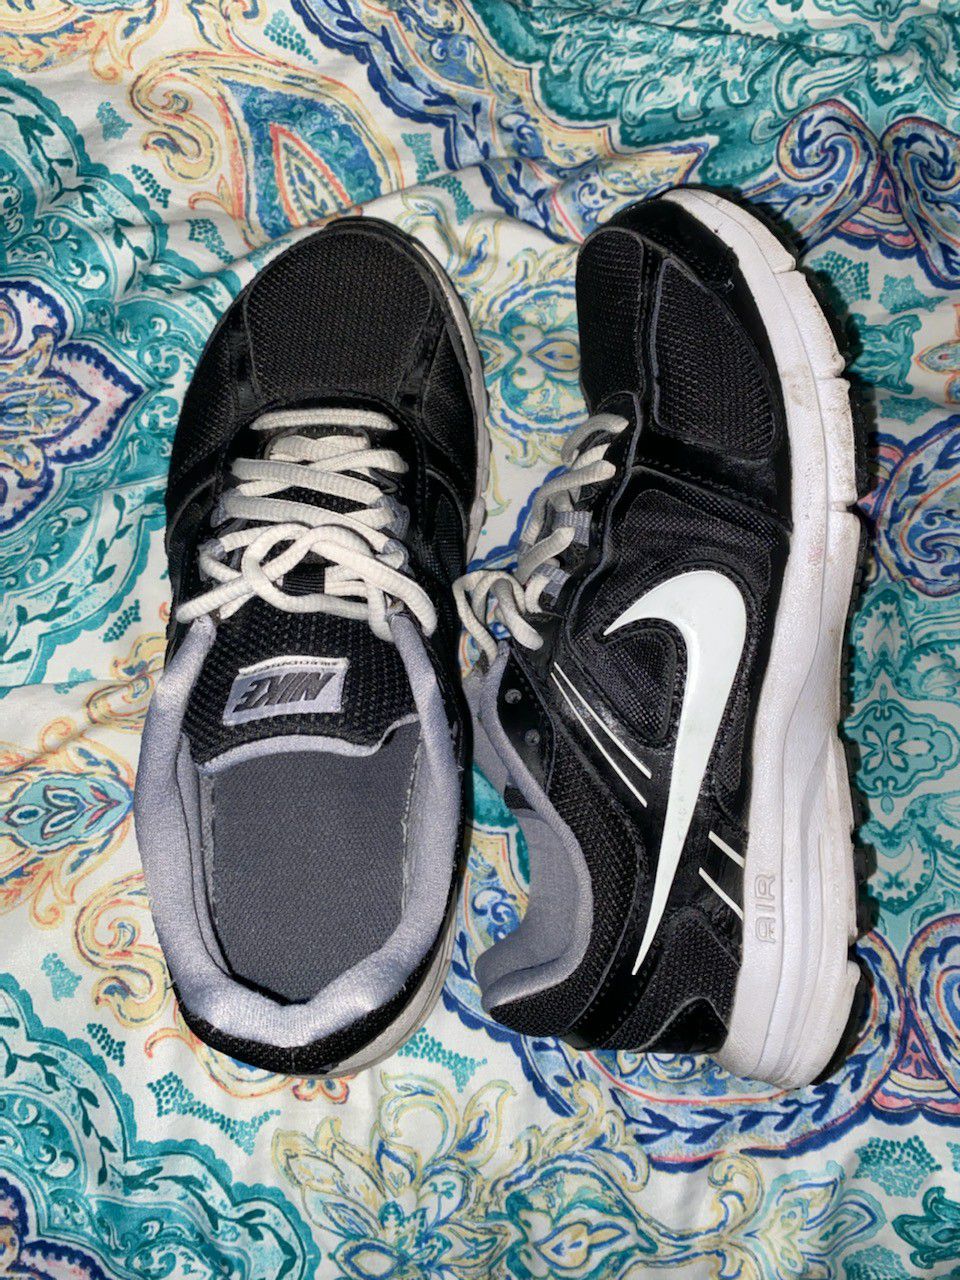 Nike Air shoes